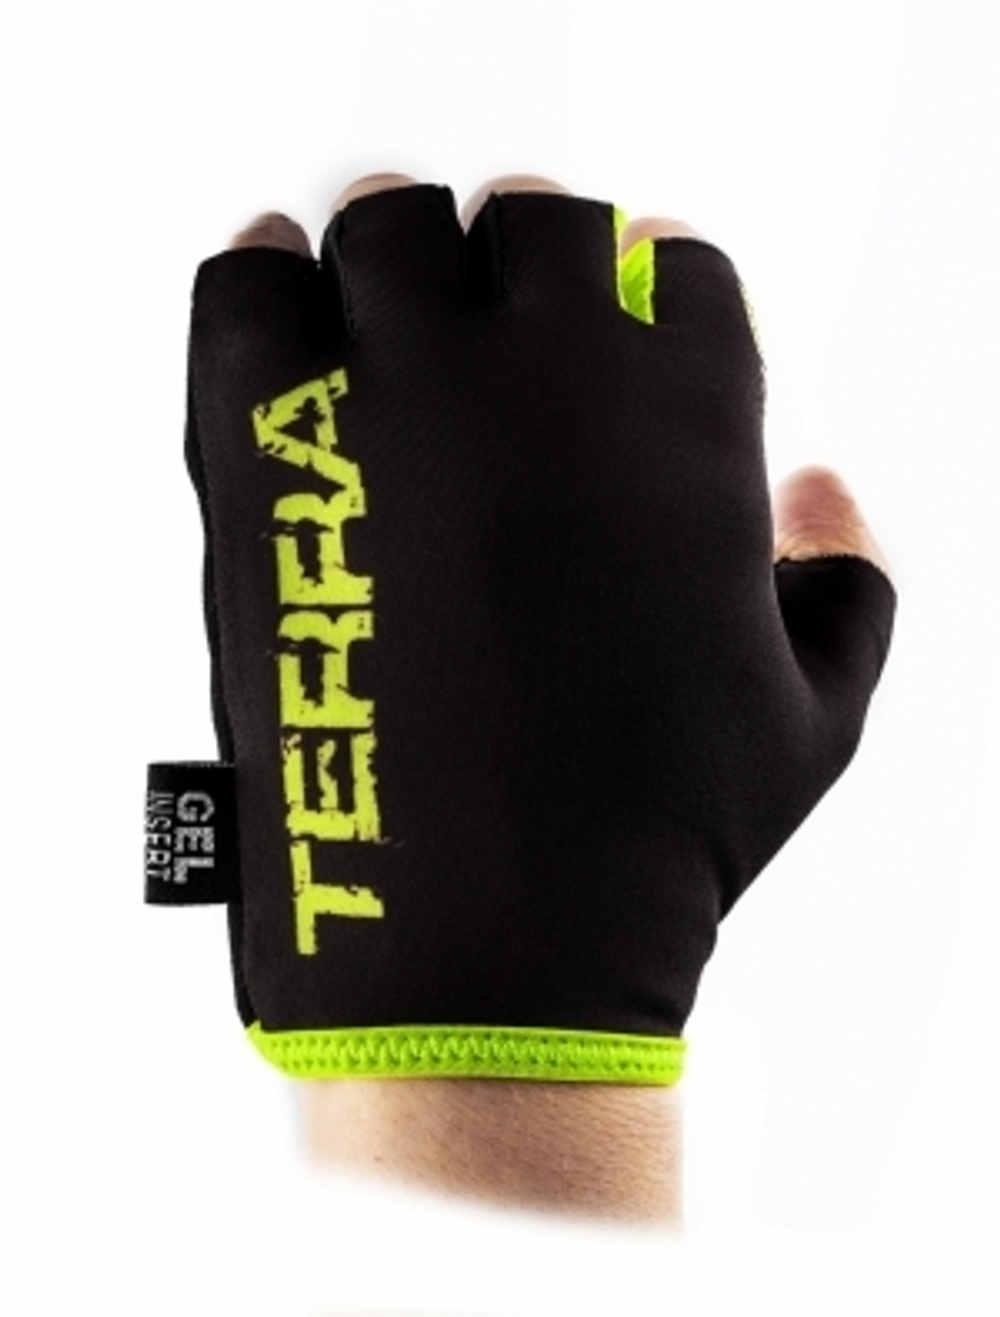 Перчатки велосипедные, NEW TERRA, черные с зеленым, размер S VG 837 New Terra (S)